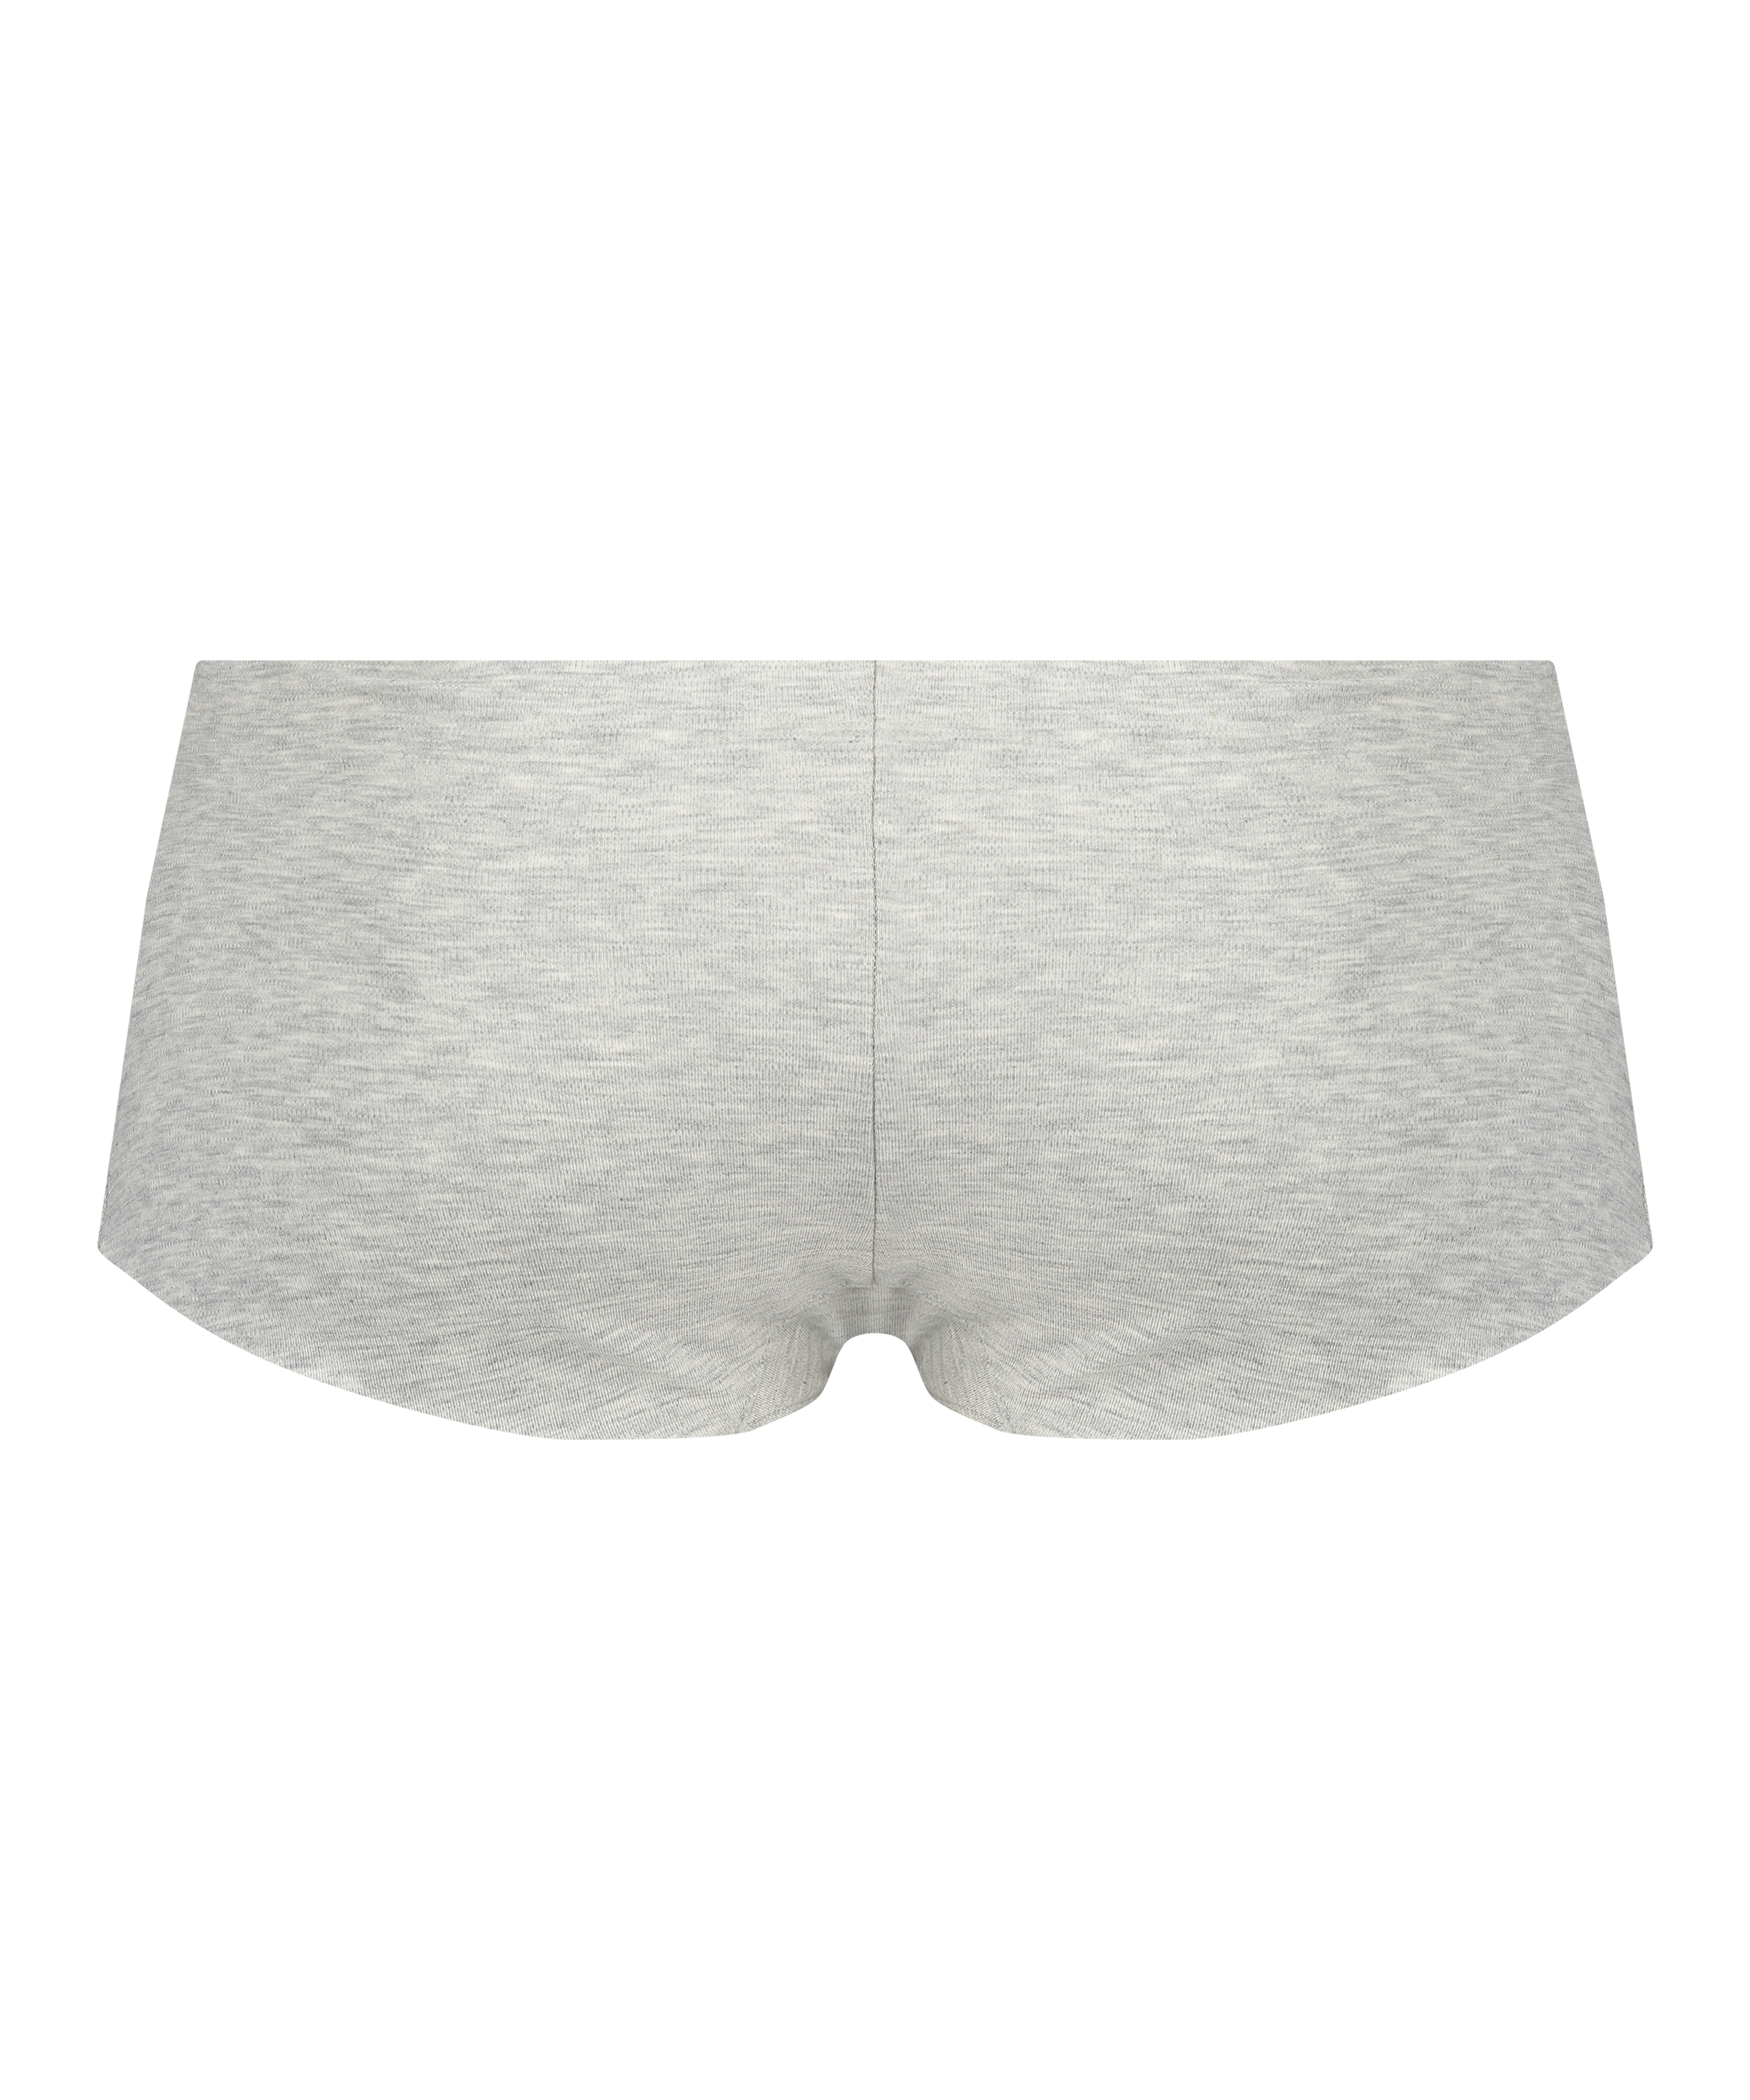 Invisible cotton boxers, Gray, main